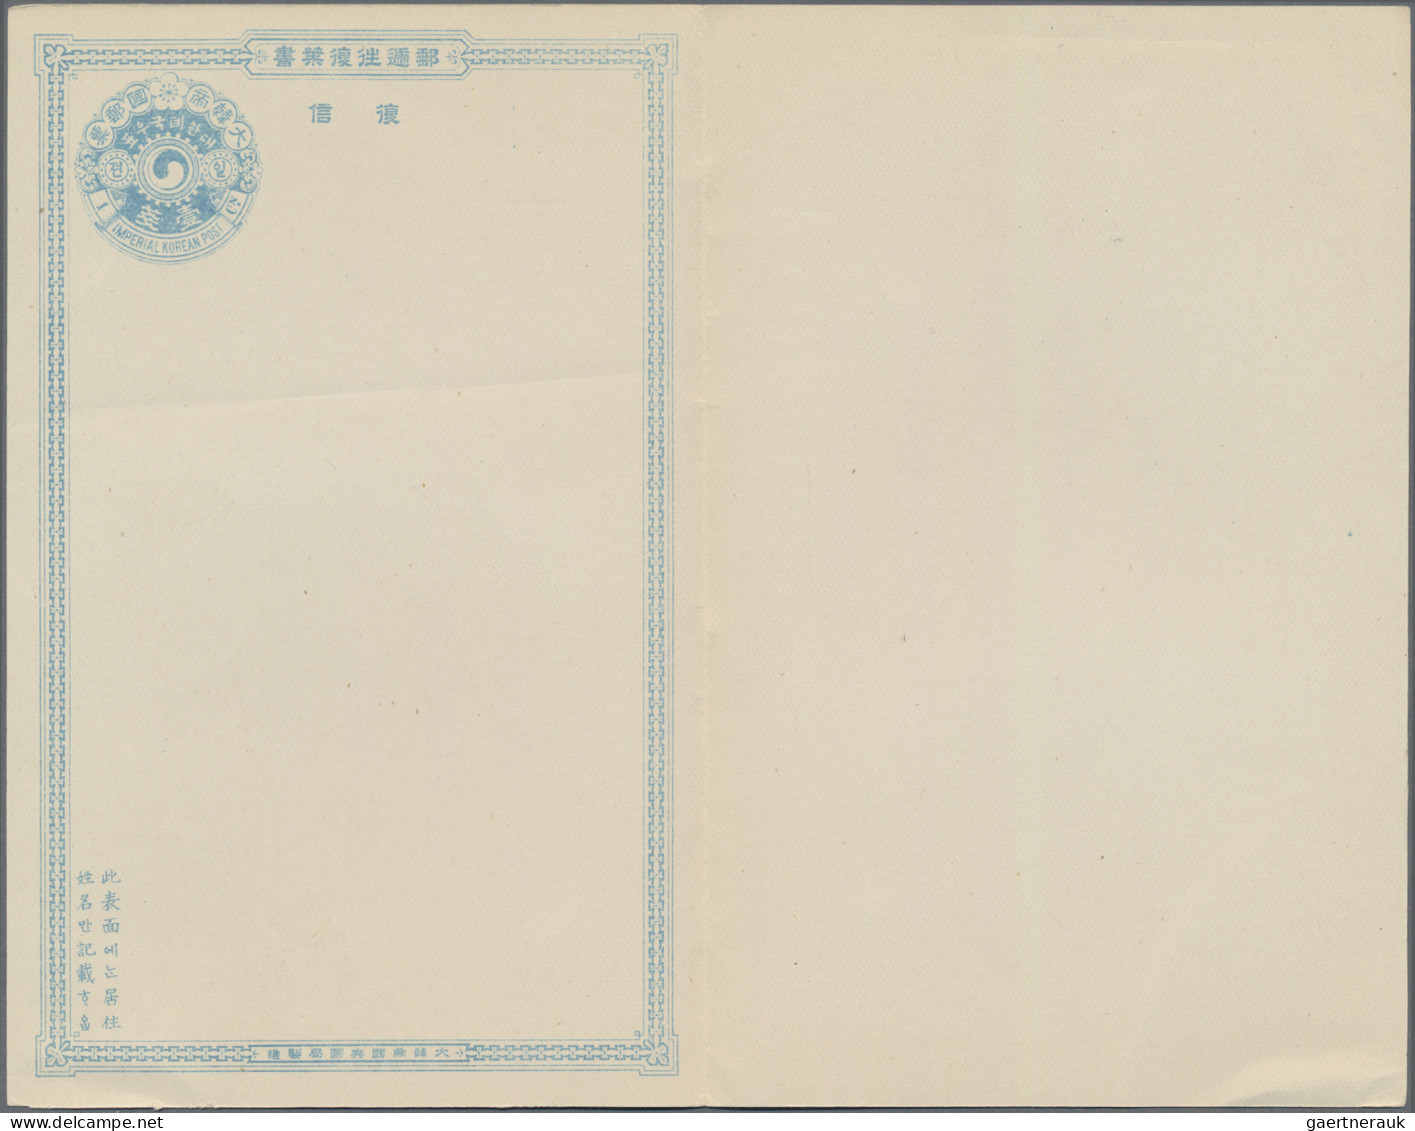 Krorea - Postal Stationary: 1900/01, Reply Card 1 Ch.+1 Ch., Single Card 1 Ch. A - Korea (...-1945)